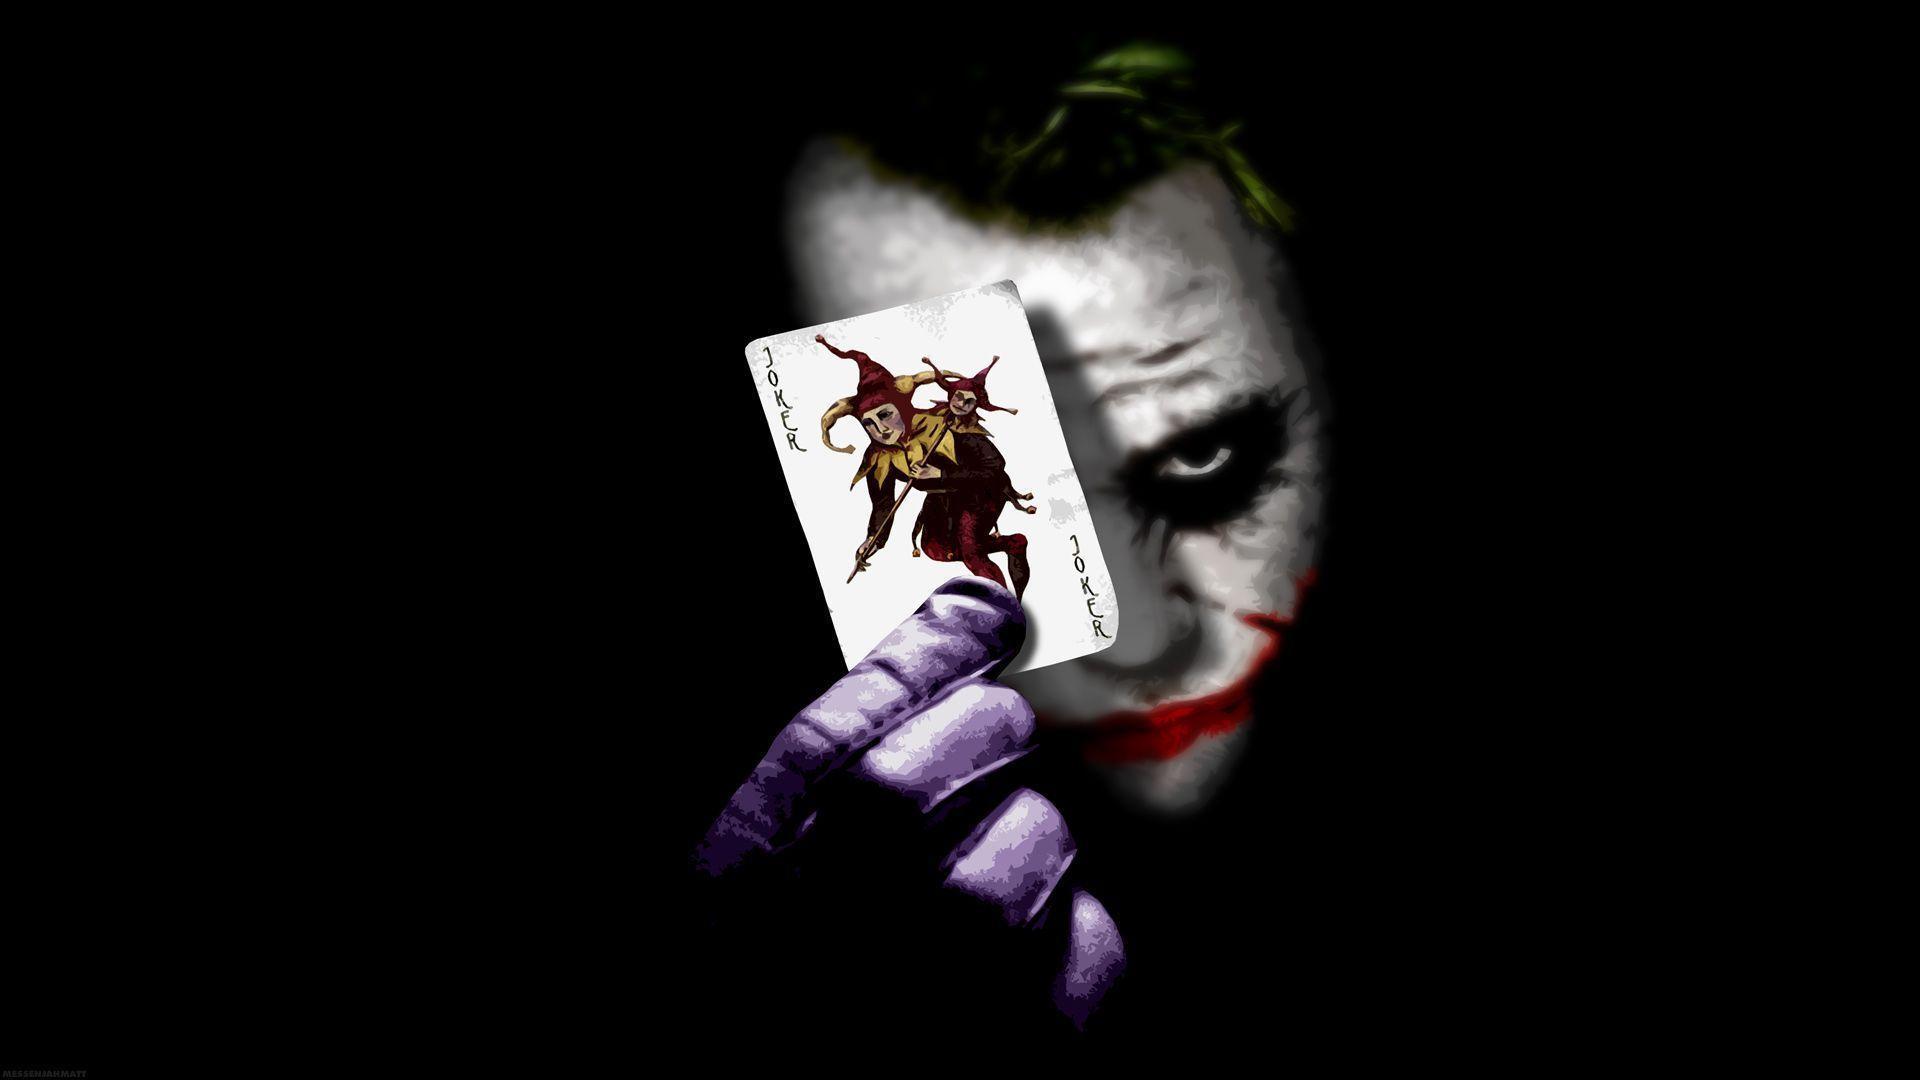 Fondos de pantalla de Joker - Mejores fondos de pantalla de Joker gratis - WallpaperAccess